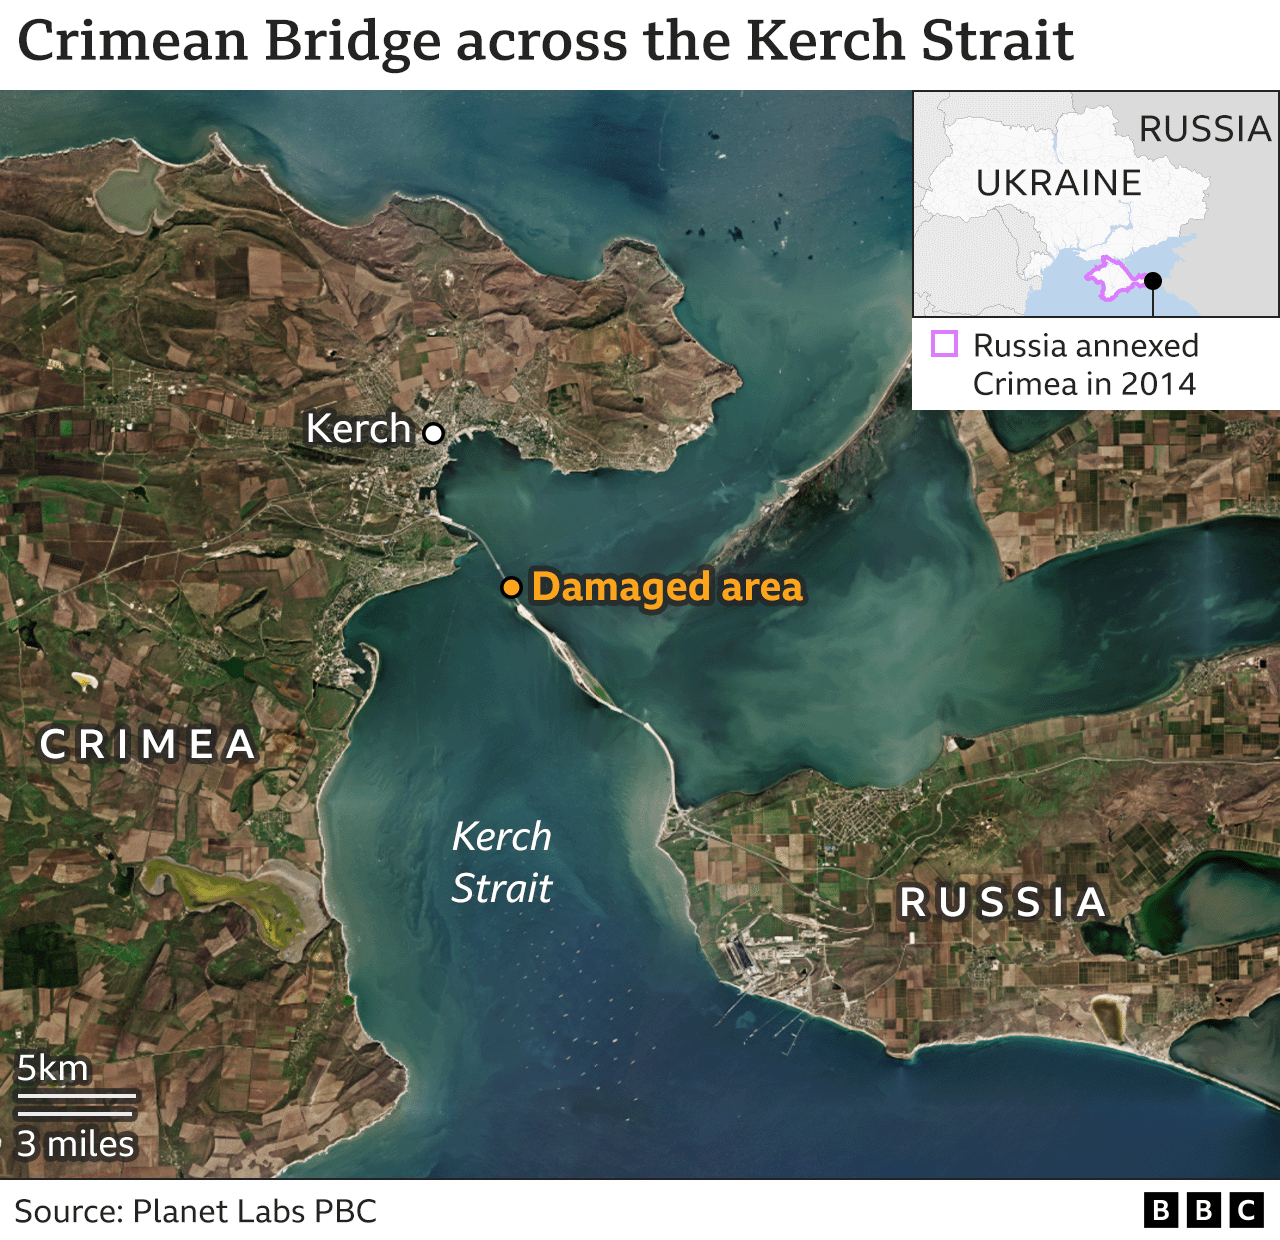 Map of the Crimean Bridge across the Kerch Strait